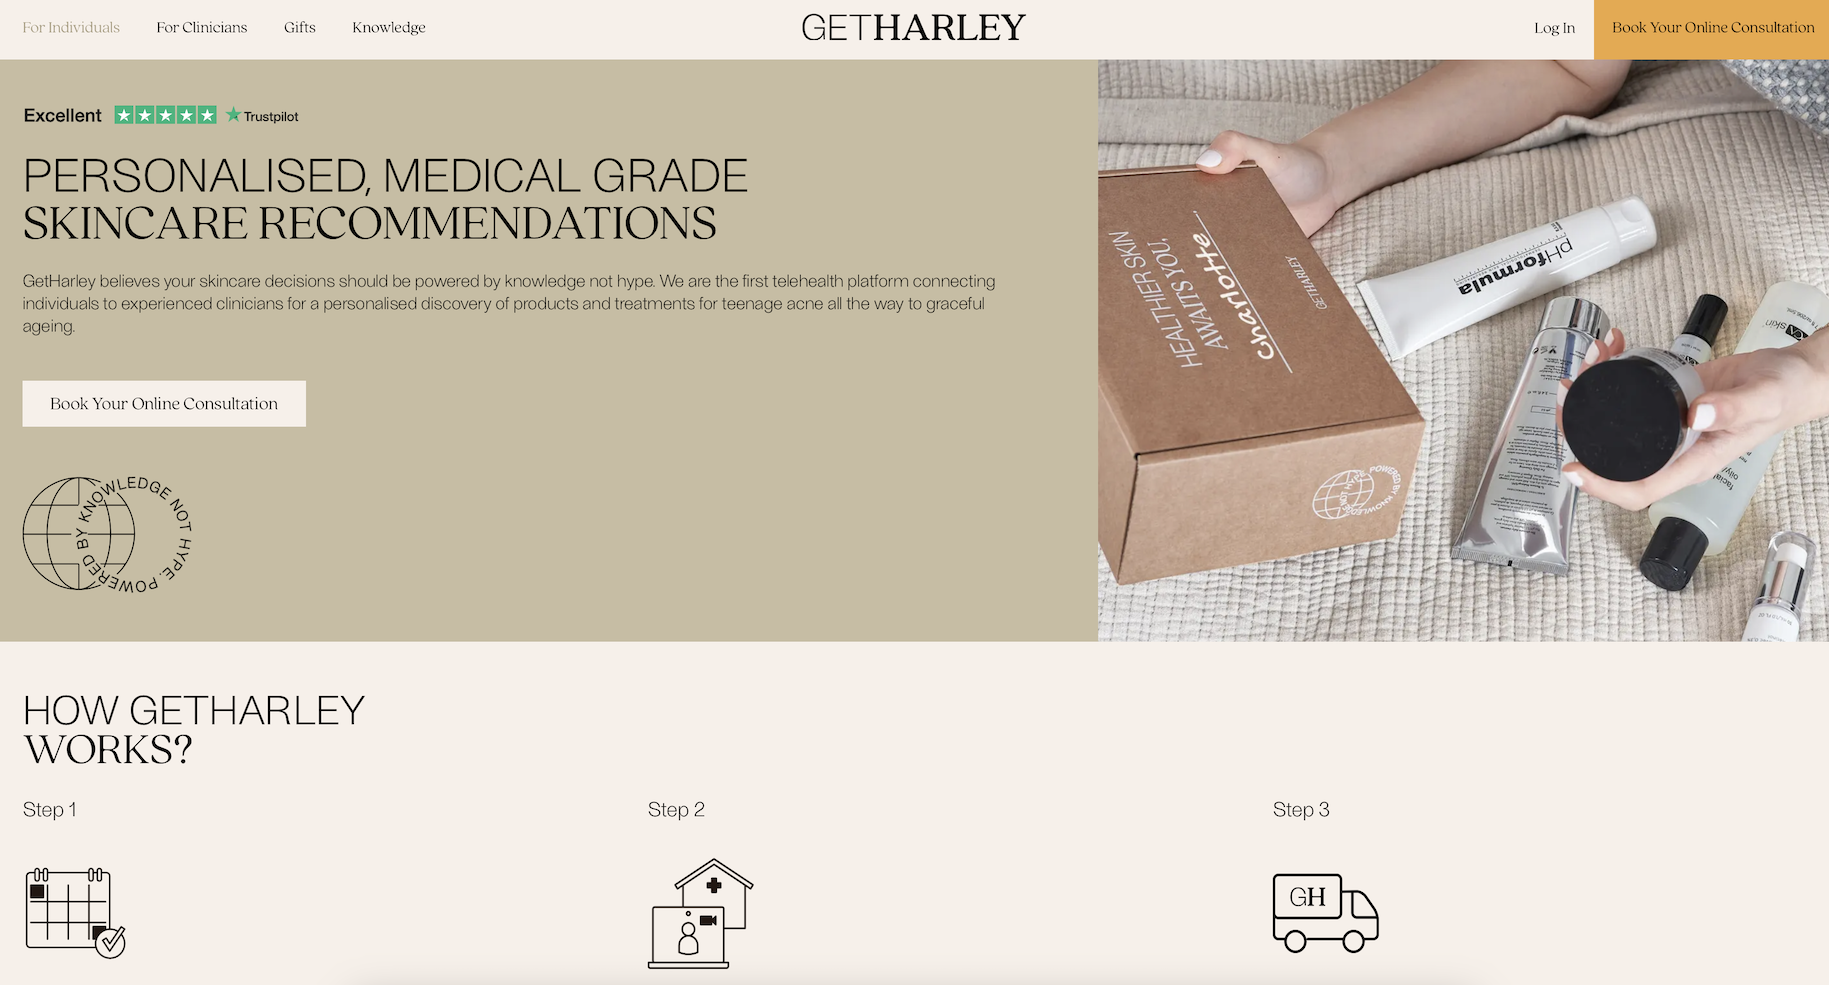 英国线上医学美容咨询和护肤品平台 GetHarley 完成5200万美元新一轮融资